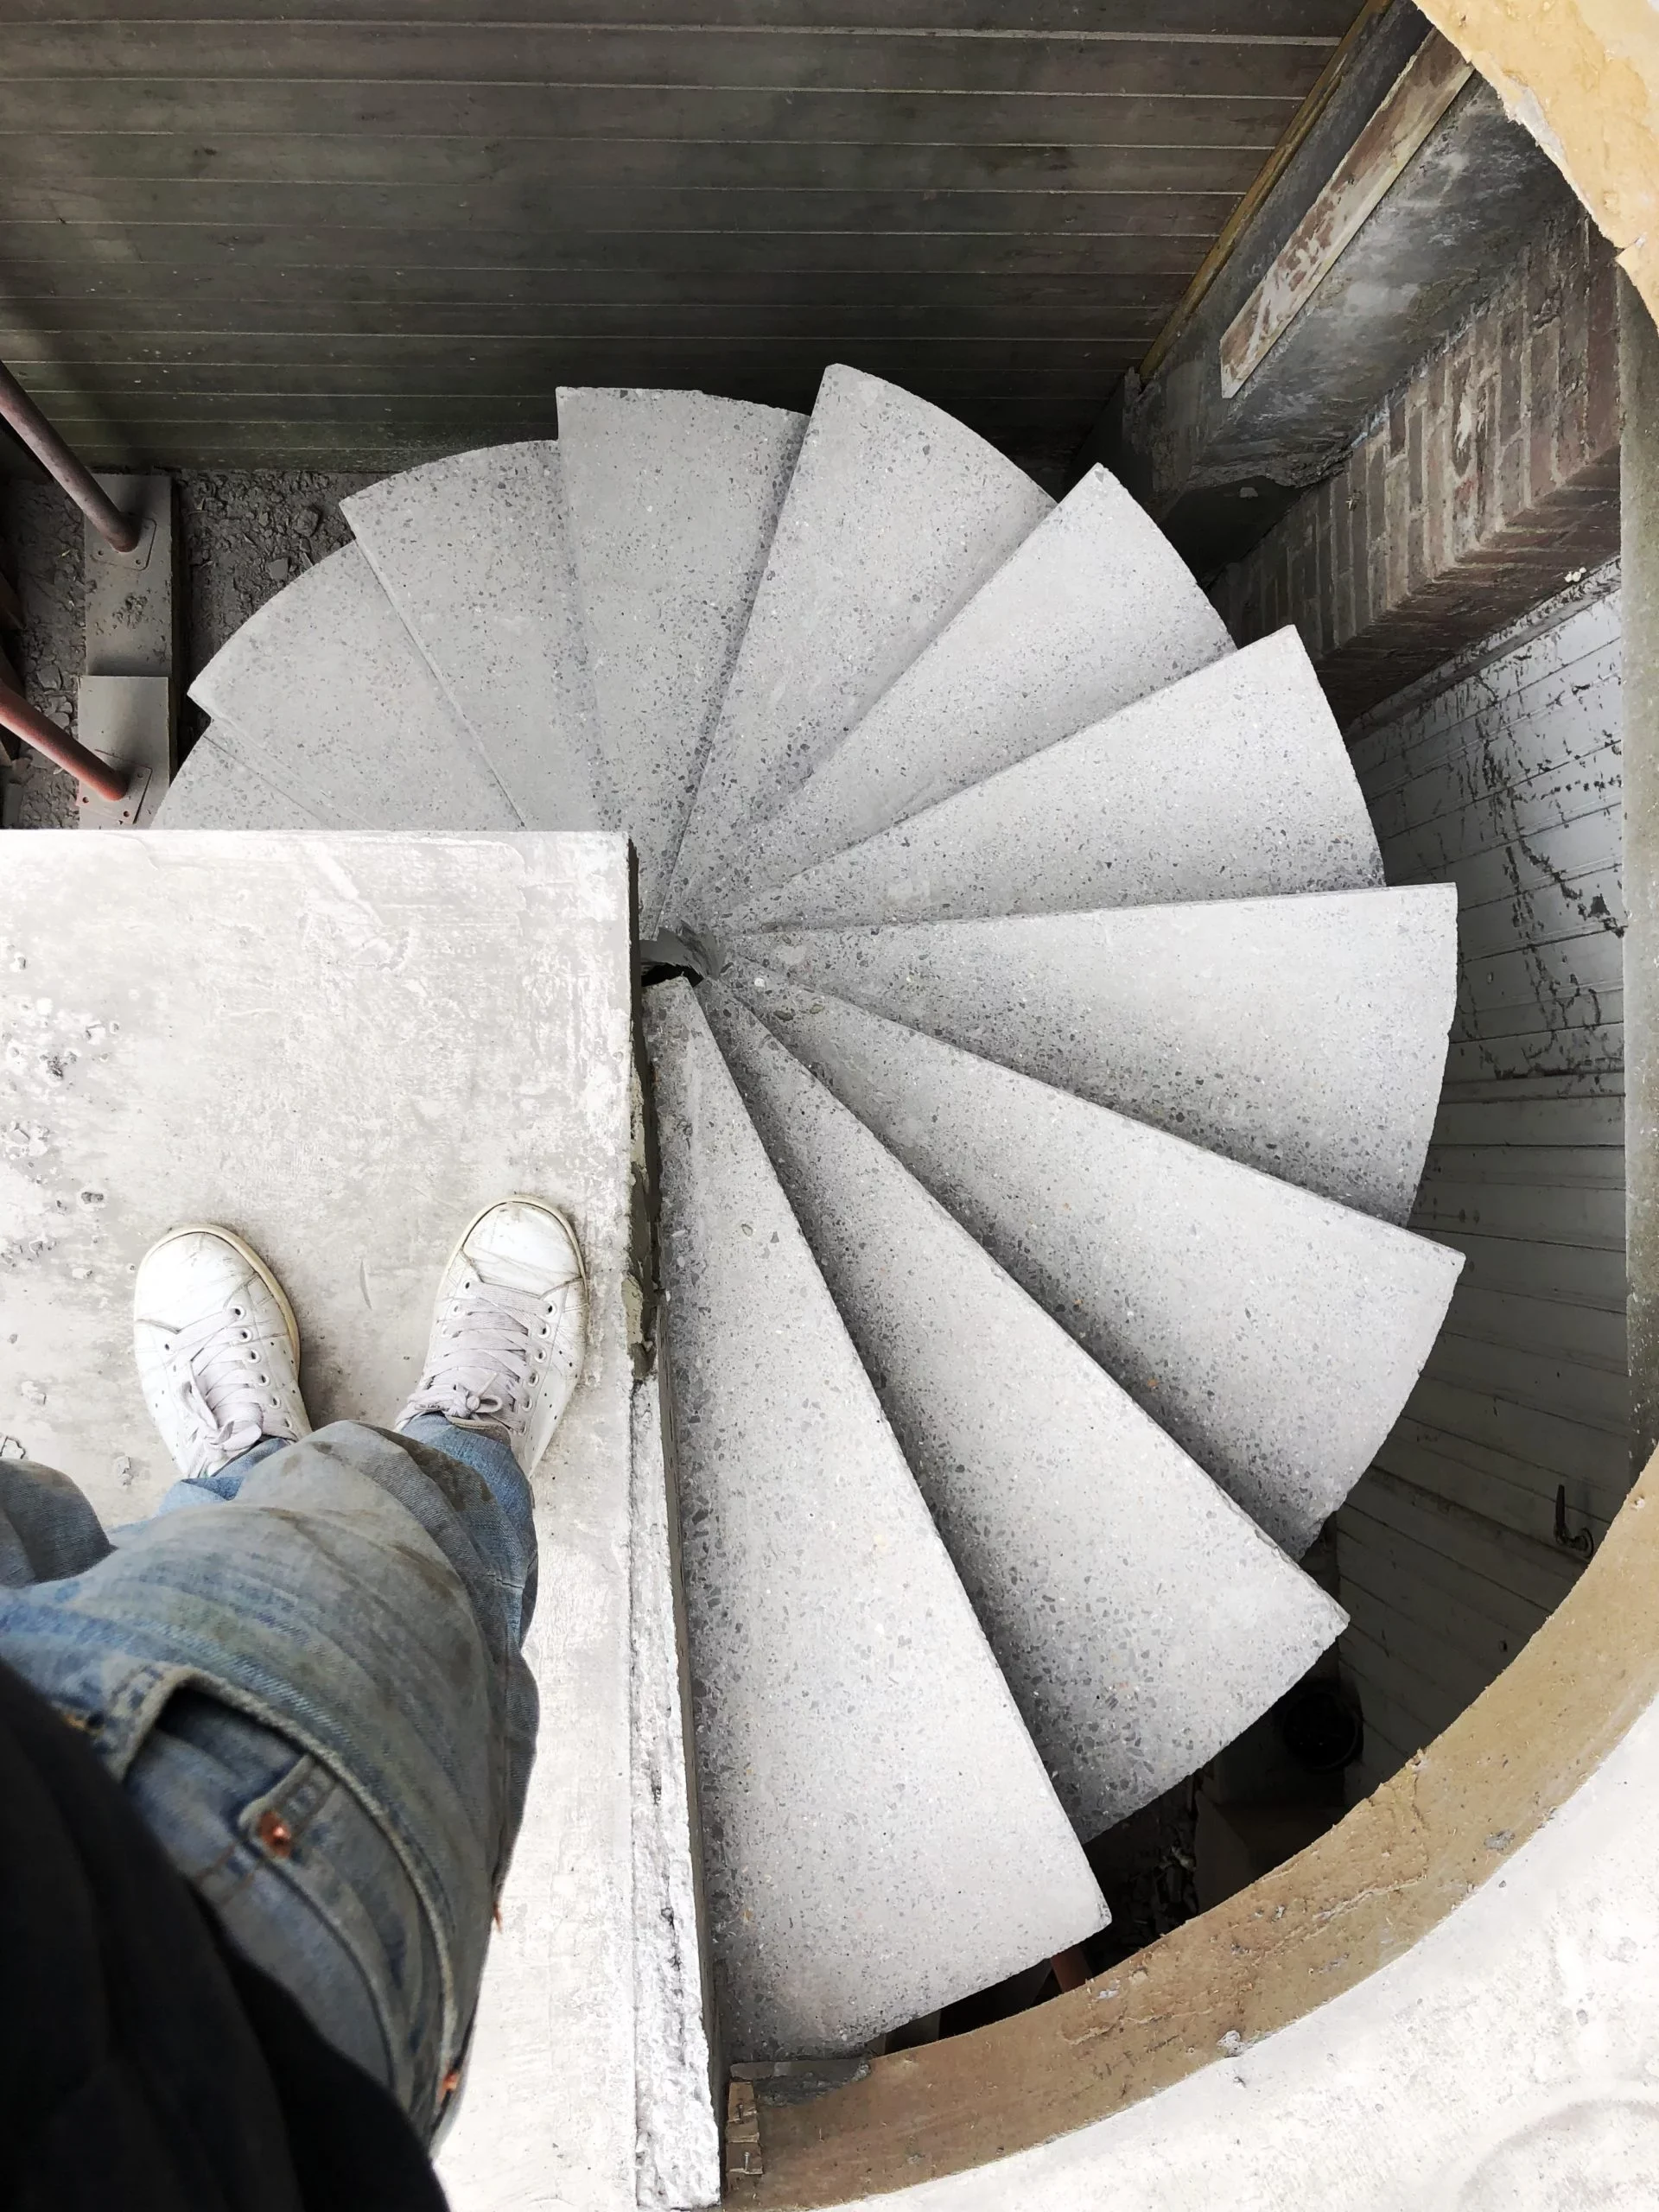 escalier en spirale